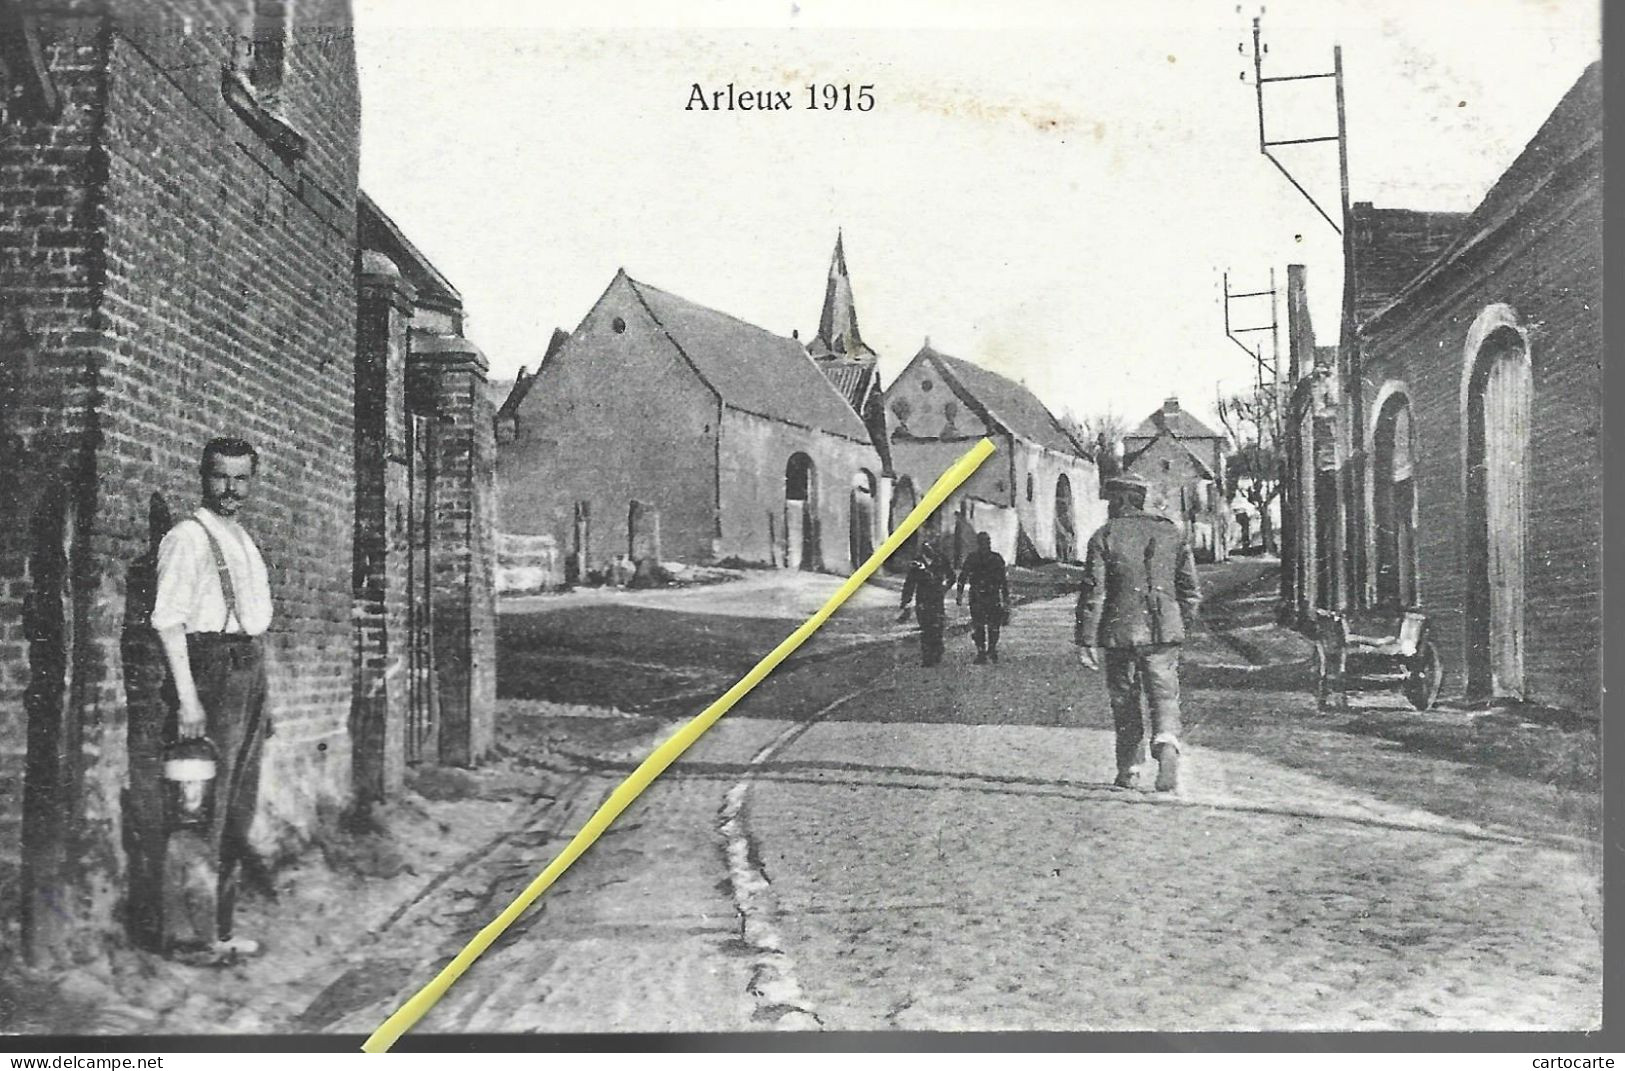 59 NORD ARLEUX 1915 - Arleux